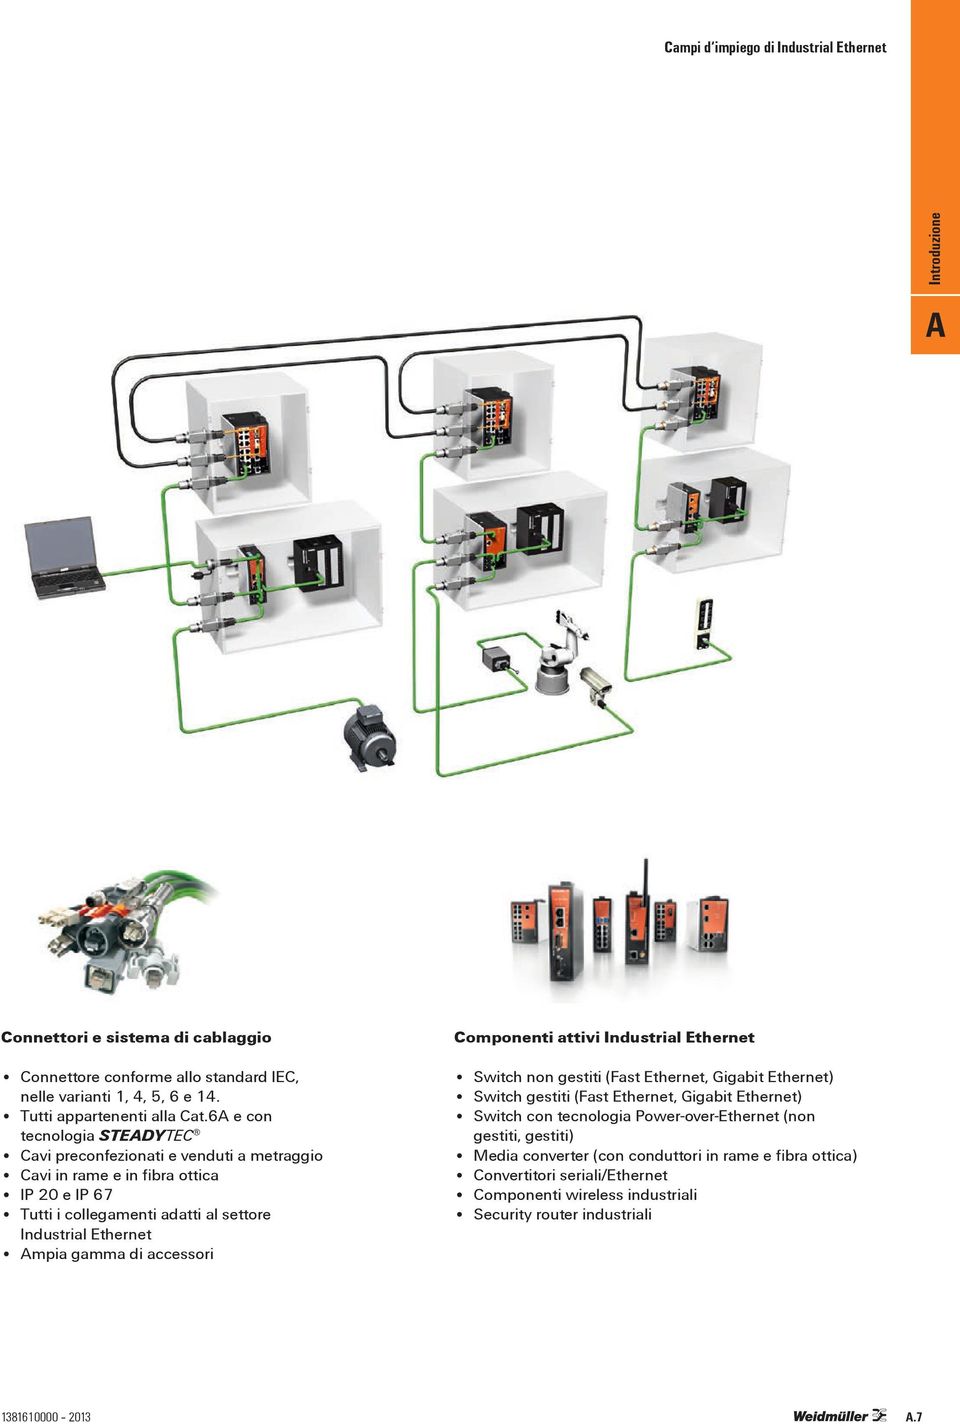 Ethernet mpia gamma di accessori Switch non gestiti (Fast Ethernet, Gigabit Ethernet) Switch gestiti (Fast Ethernet, Gigabit Ethernet) Switch con tecnologia